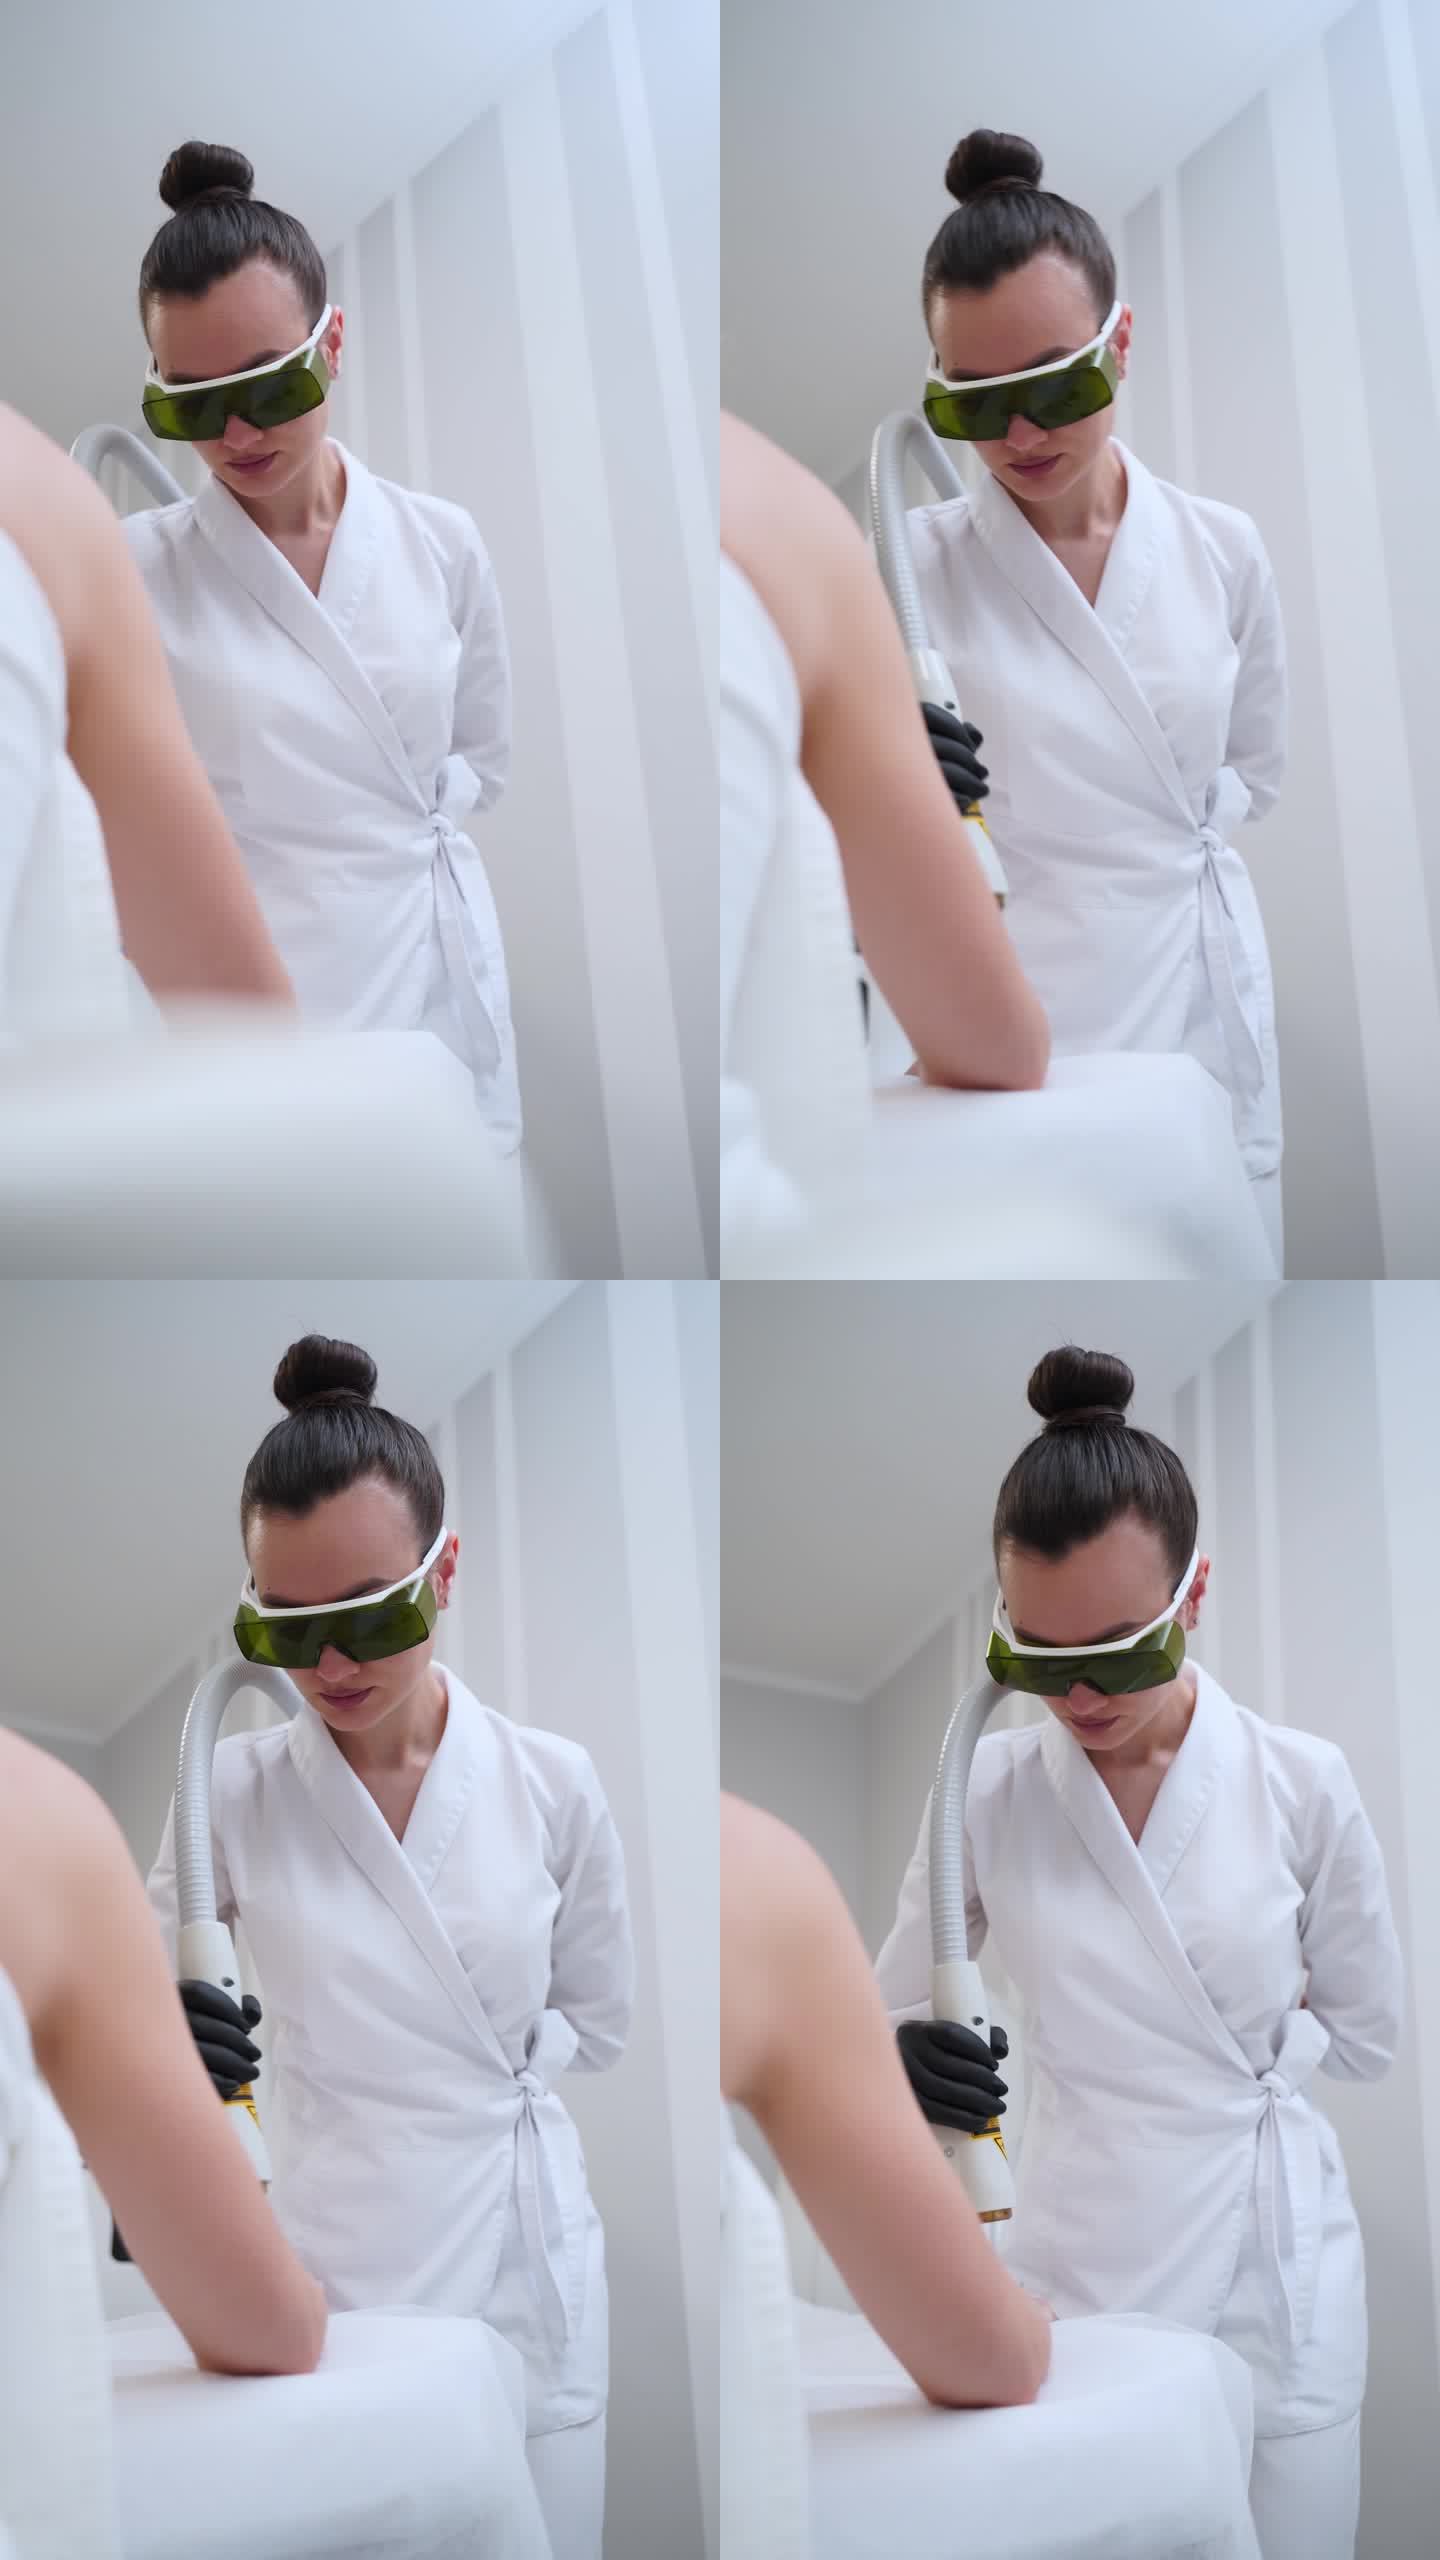 临床上由熟练的治疗师对手臂进行激光脱毛治疗。戴上防护眼镜，精密激光技术瞄准毛囊。美观，安全，脱毛效果